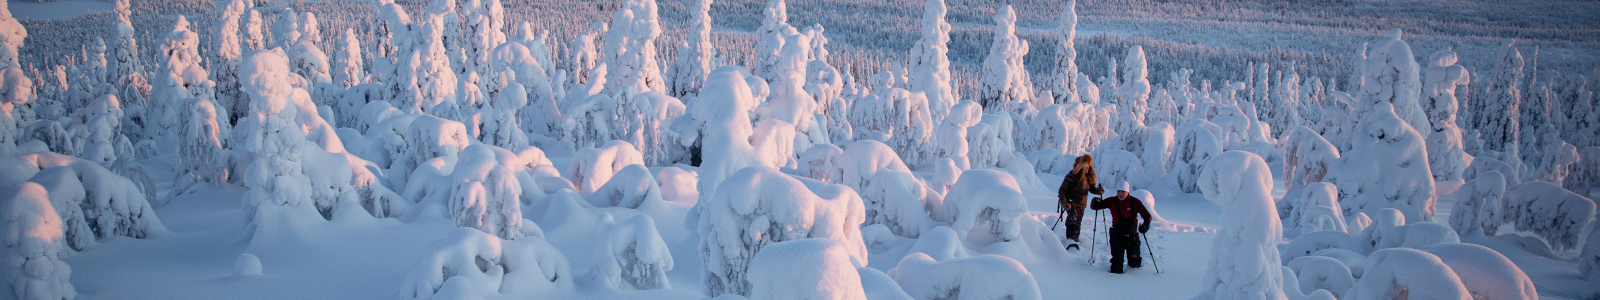 Finland wintervakantie